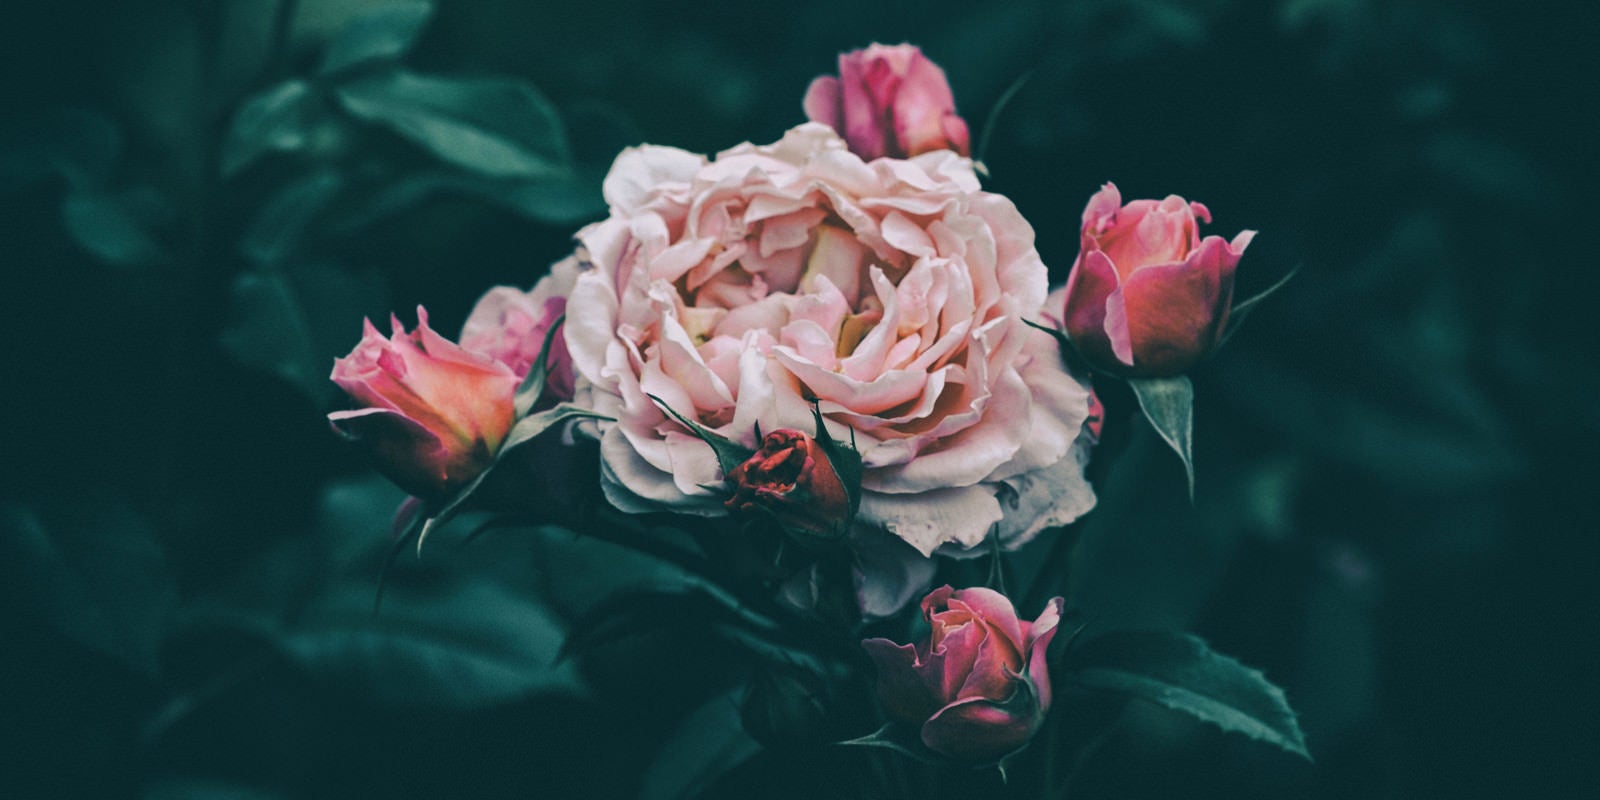 「花びらが痛むバラ」の写真